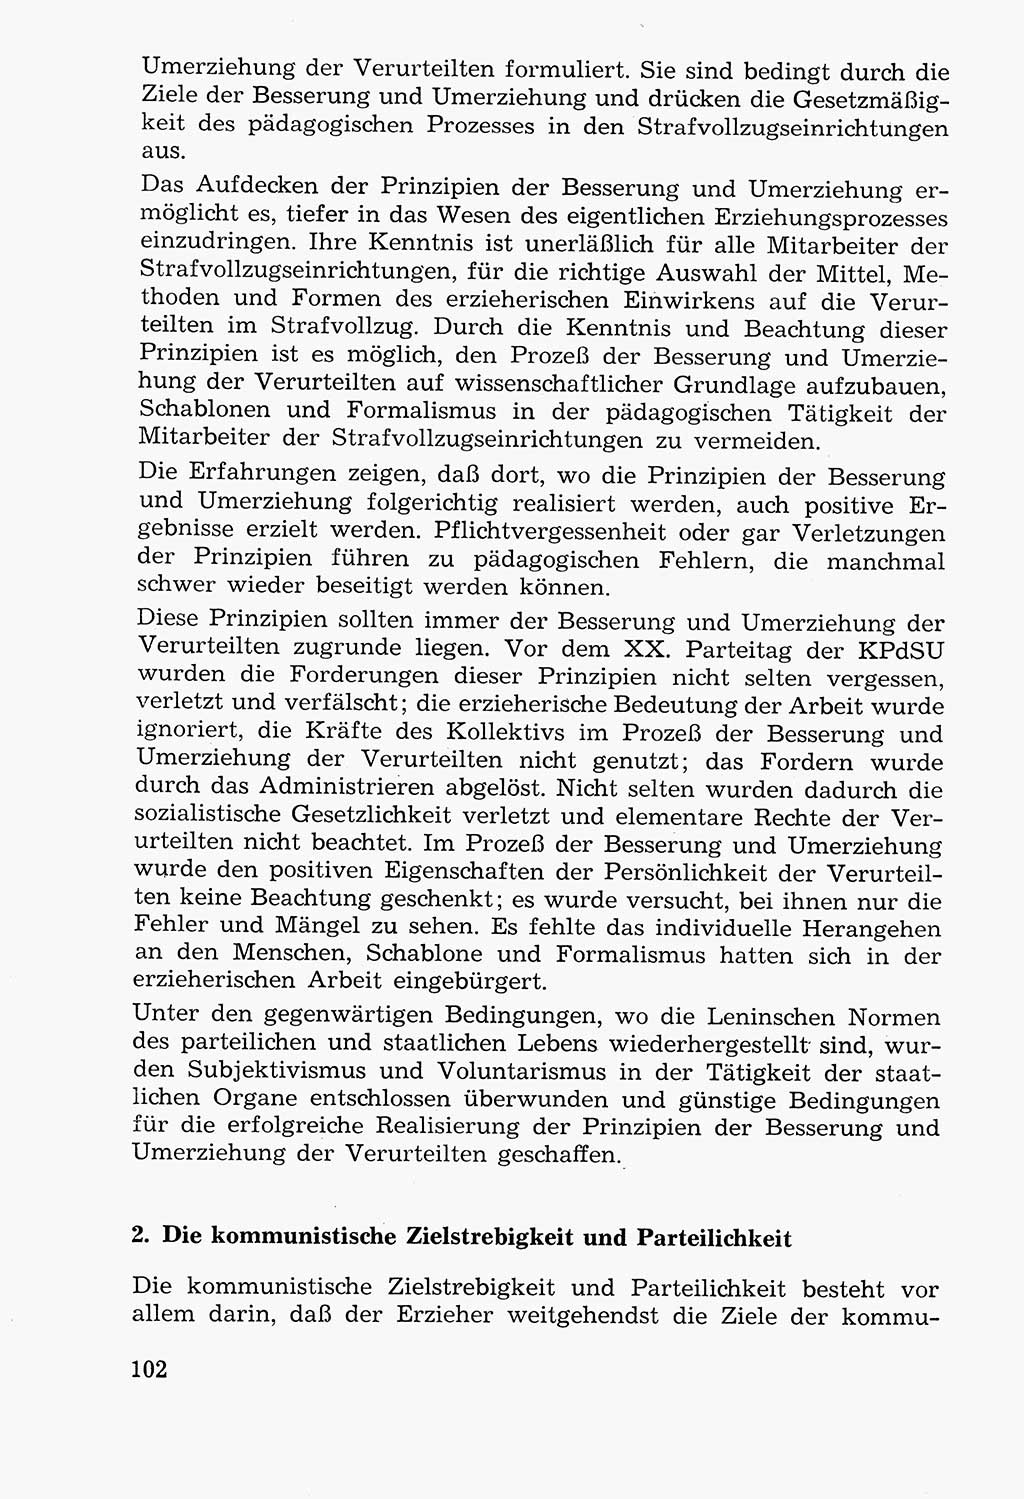 Lehrbuch der Strafvollzugspädagogik [Deutsche Demokratische Republik (DDR)] 1969, Seite 102 (Lb. SV-Pd. DDR 1969, S. 102)